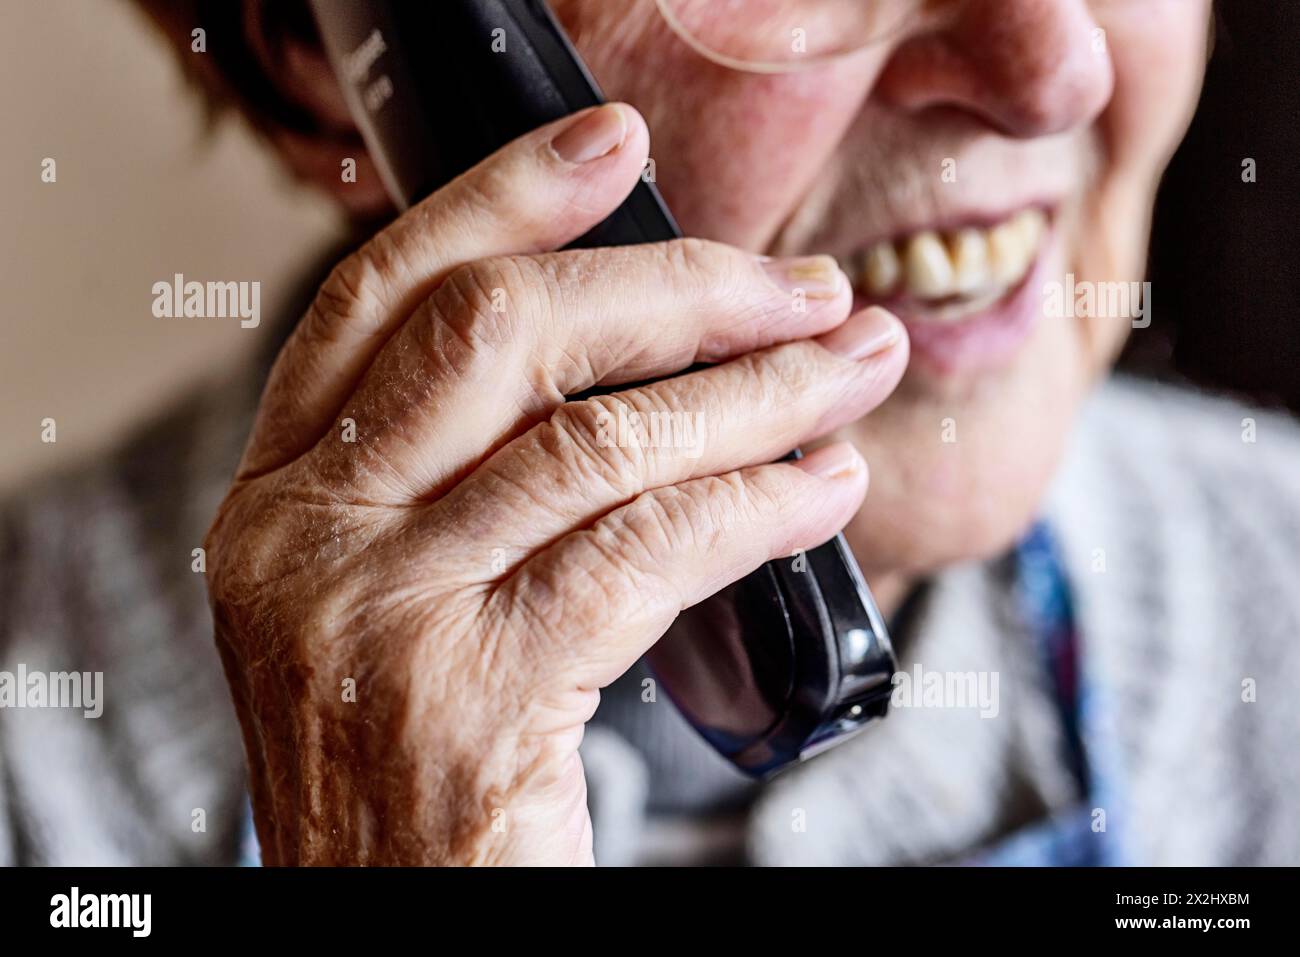 Bouche, mains et récepteur téléphonique d'une personne âgée faisant un appel téléphonique, gros plan, Cologne, Rhénanie du Nord-Westphalie, Allemagne Banque D'Images